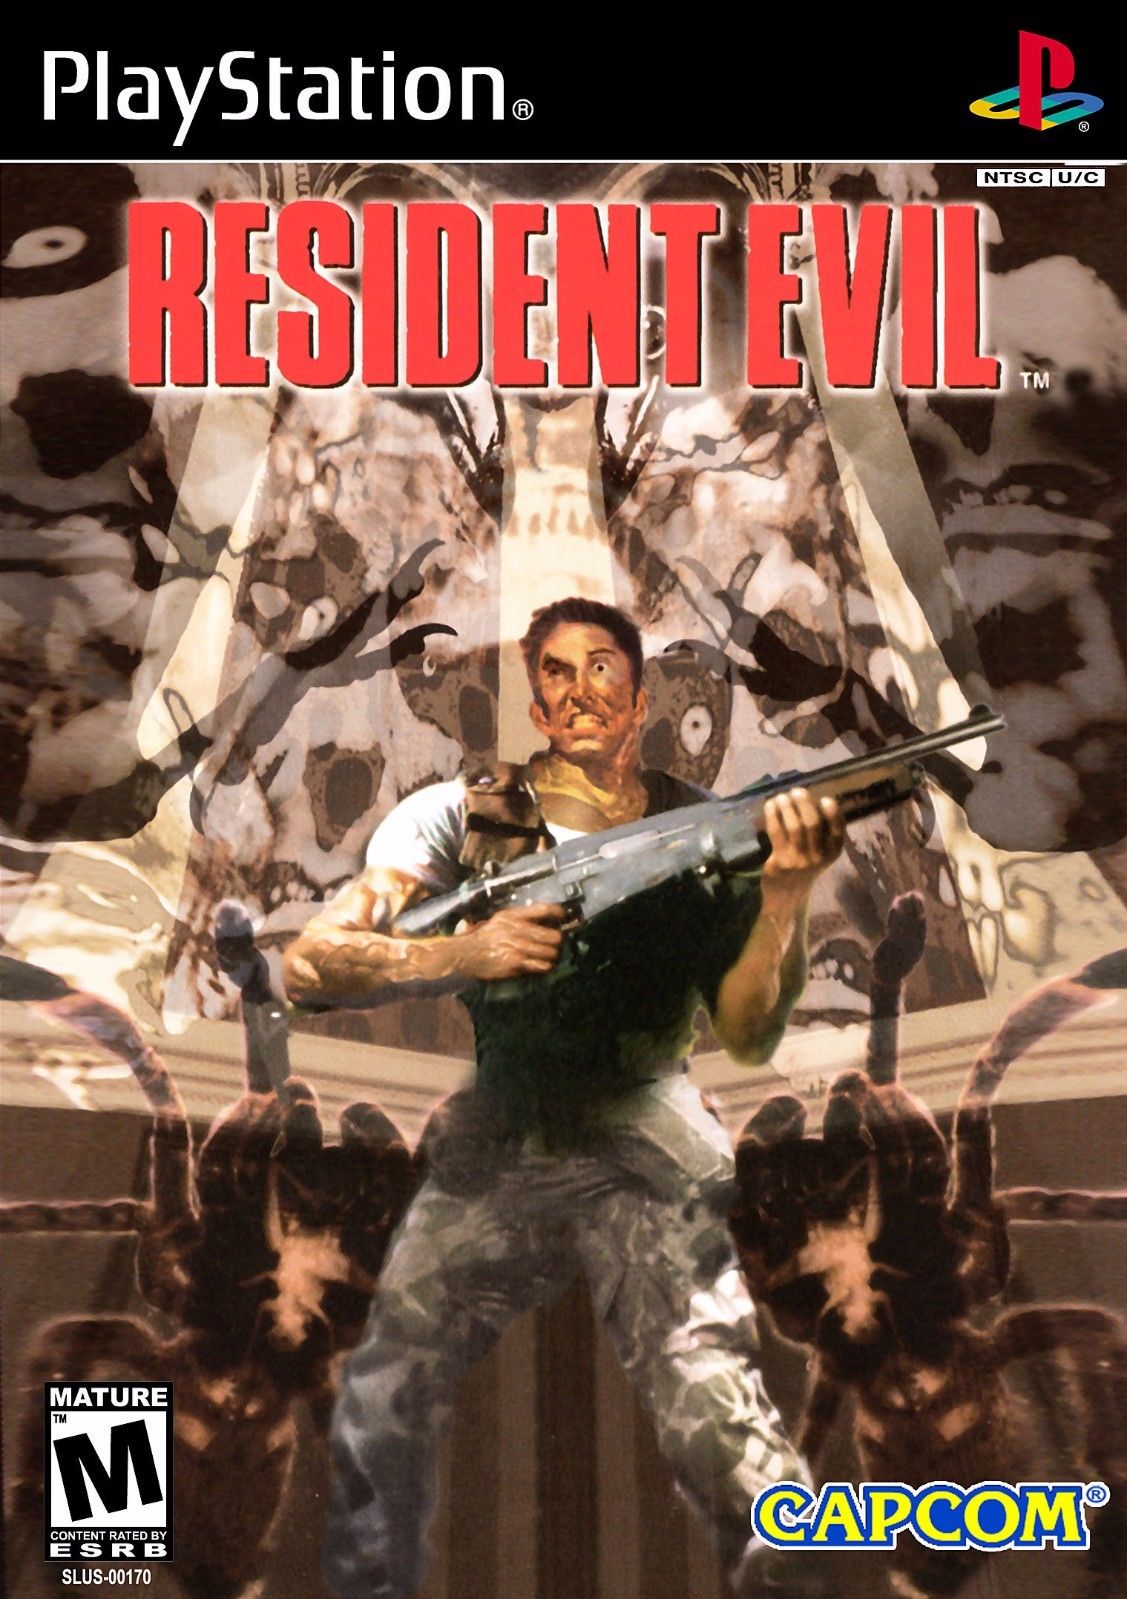 9. Resident Evil